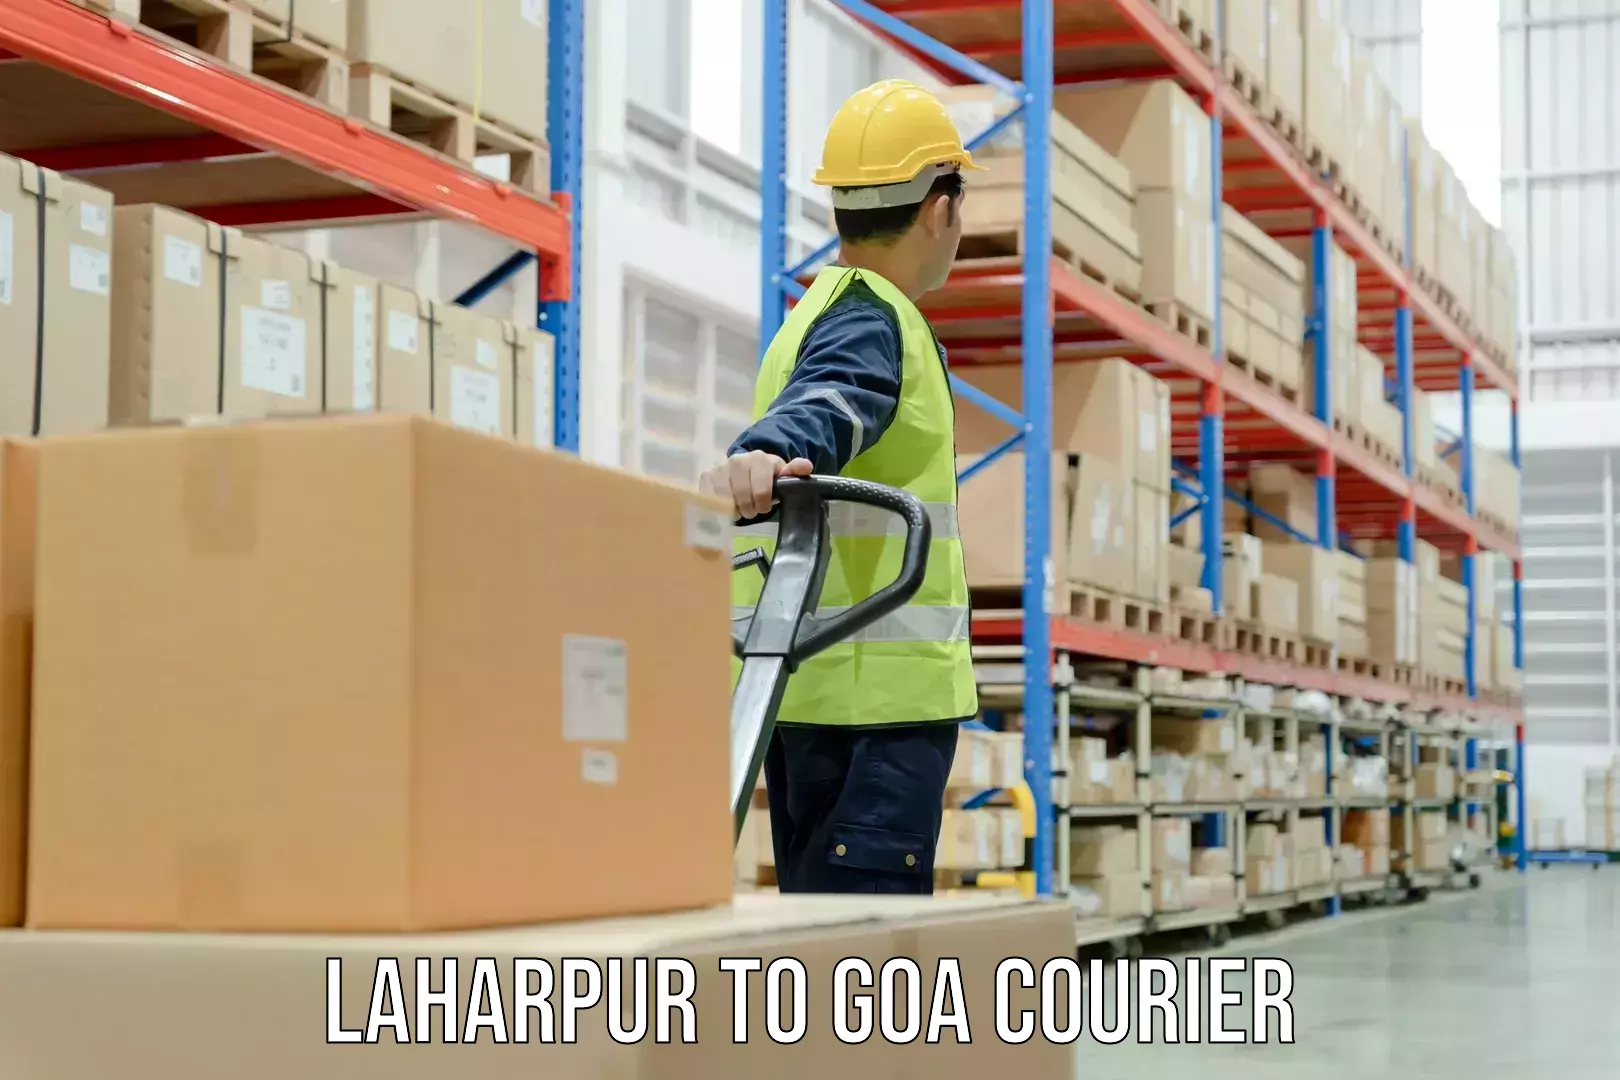 Business shipping needs Laharpur to Panaji